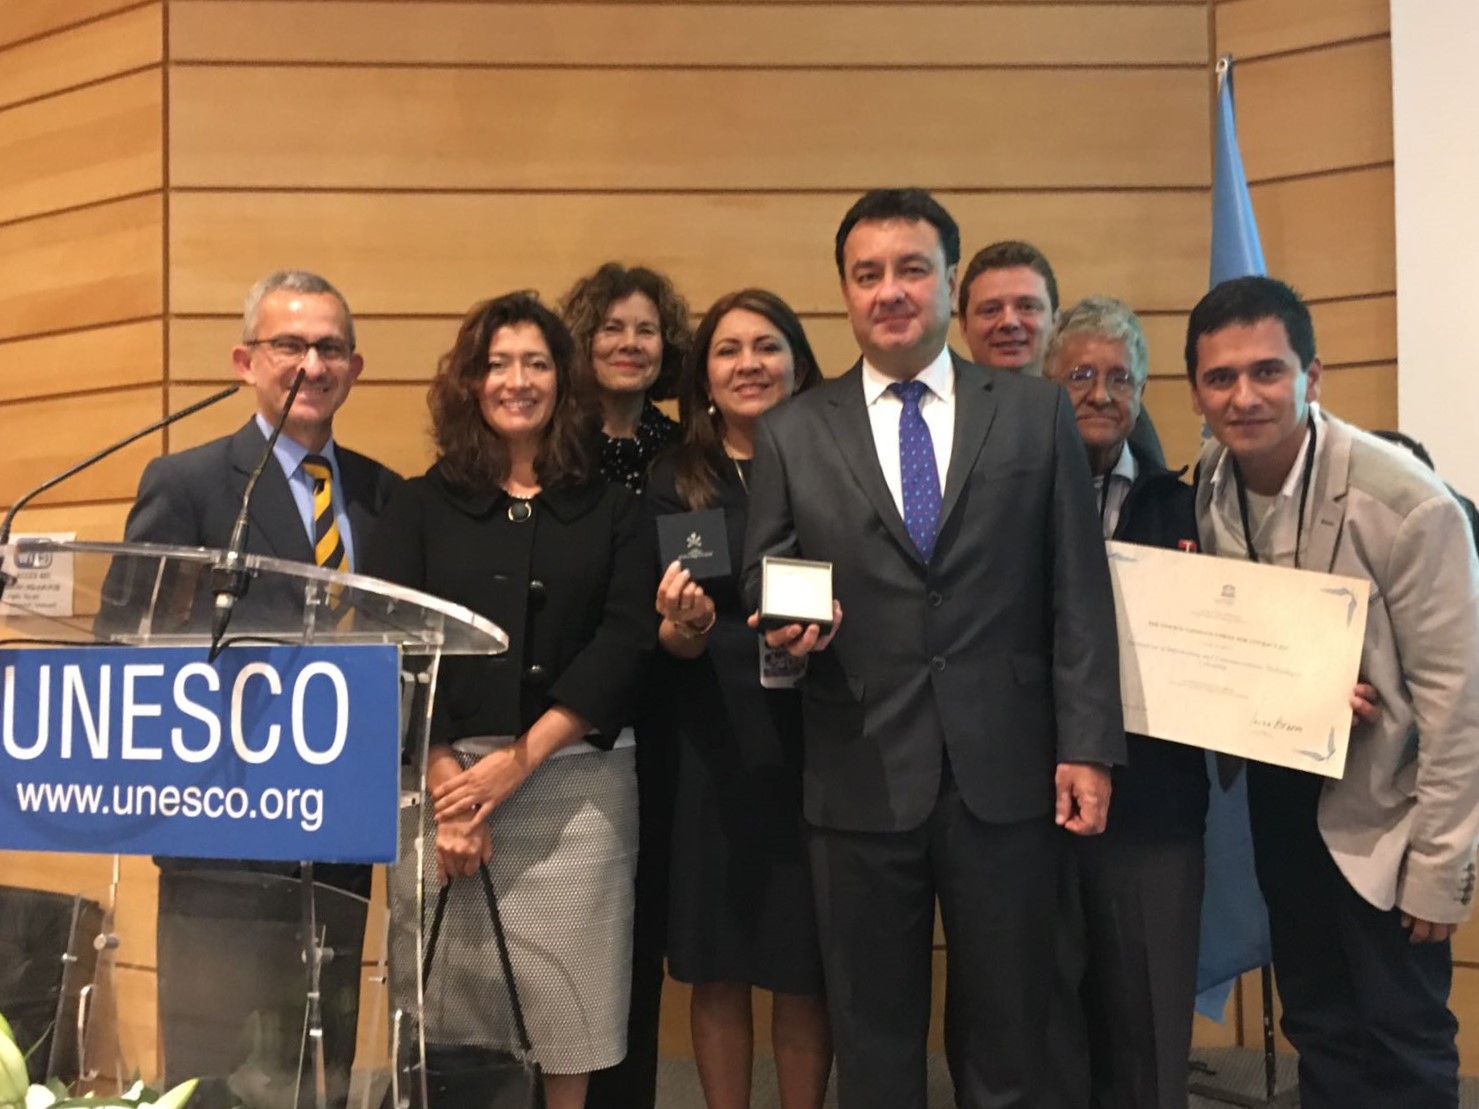 Embajada en Francia y delegación permanente de Colombia ante UNESCO acompañaron a la delegación de Armenia en la entrega del Premio UNESCO - Confucio 2017